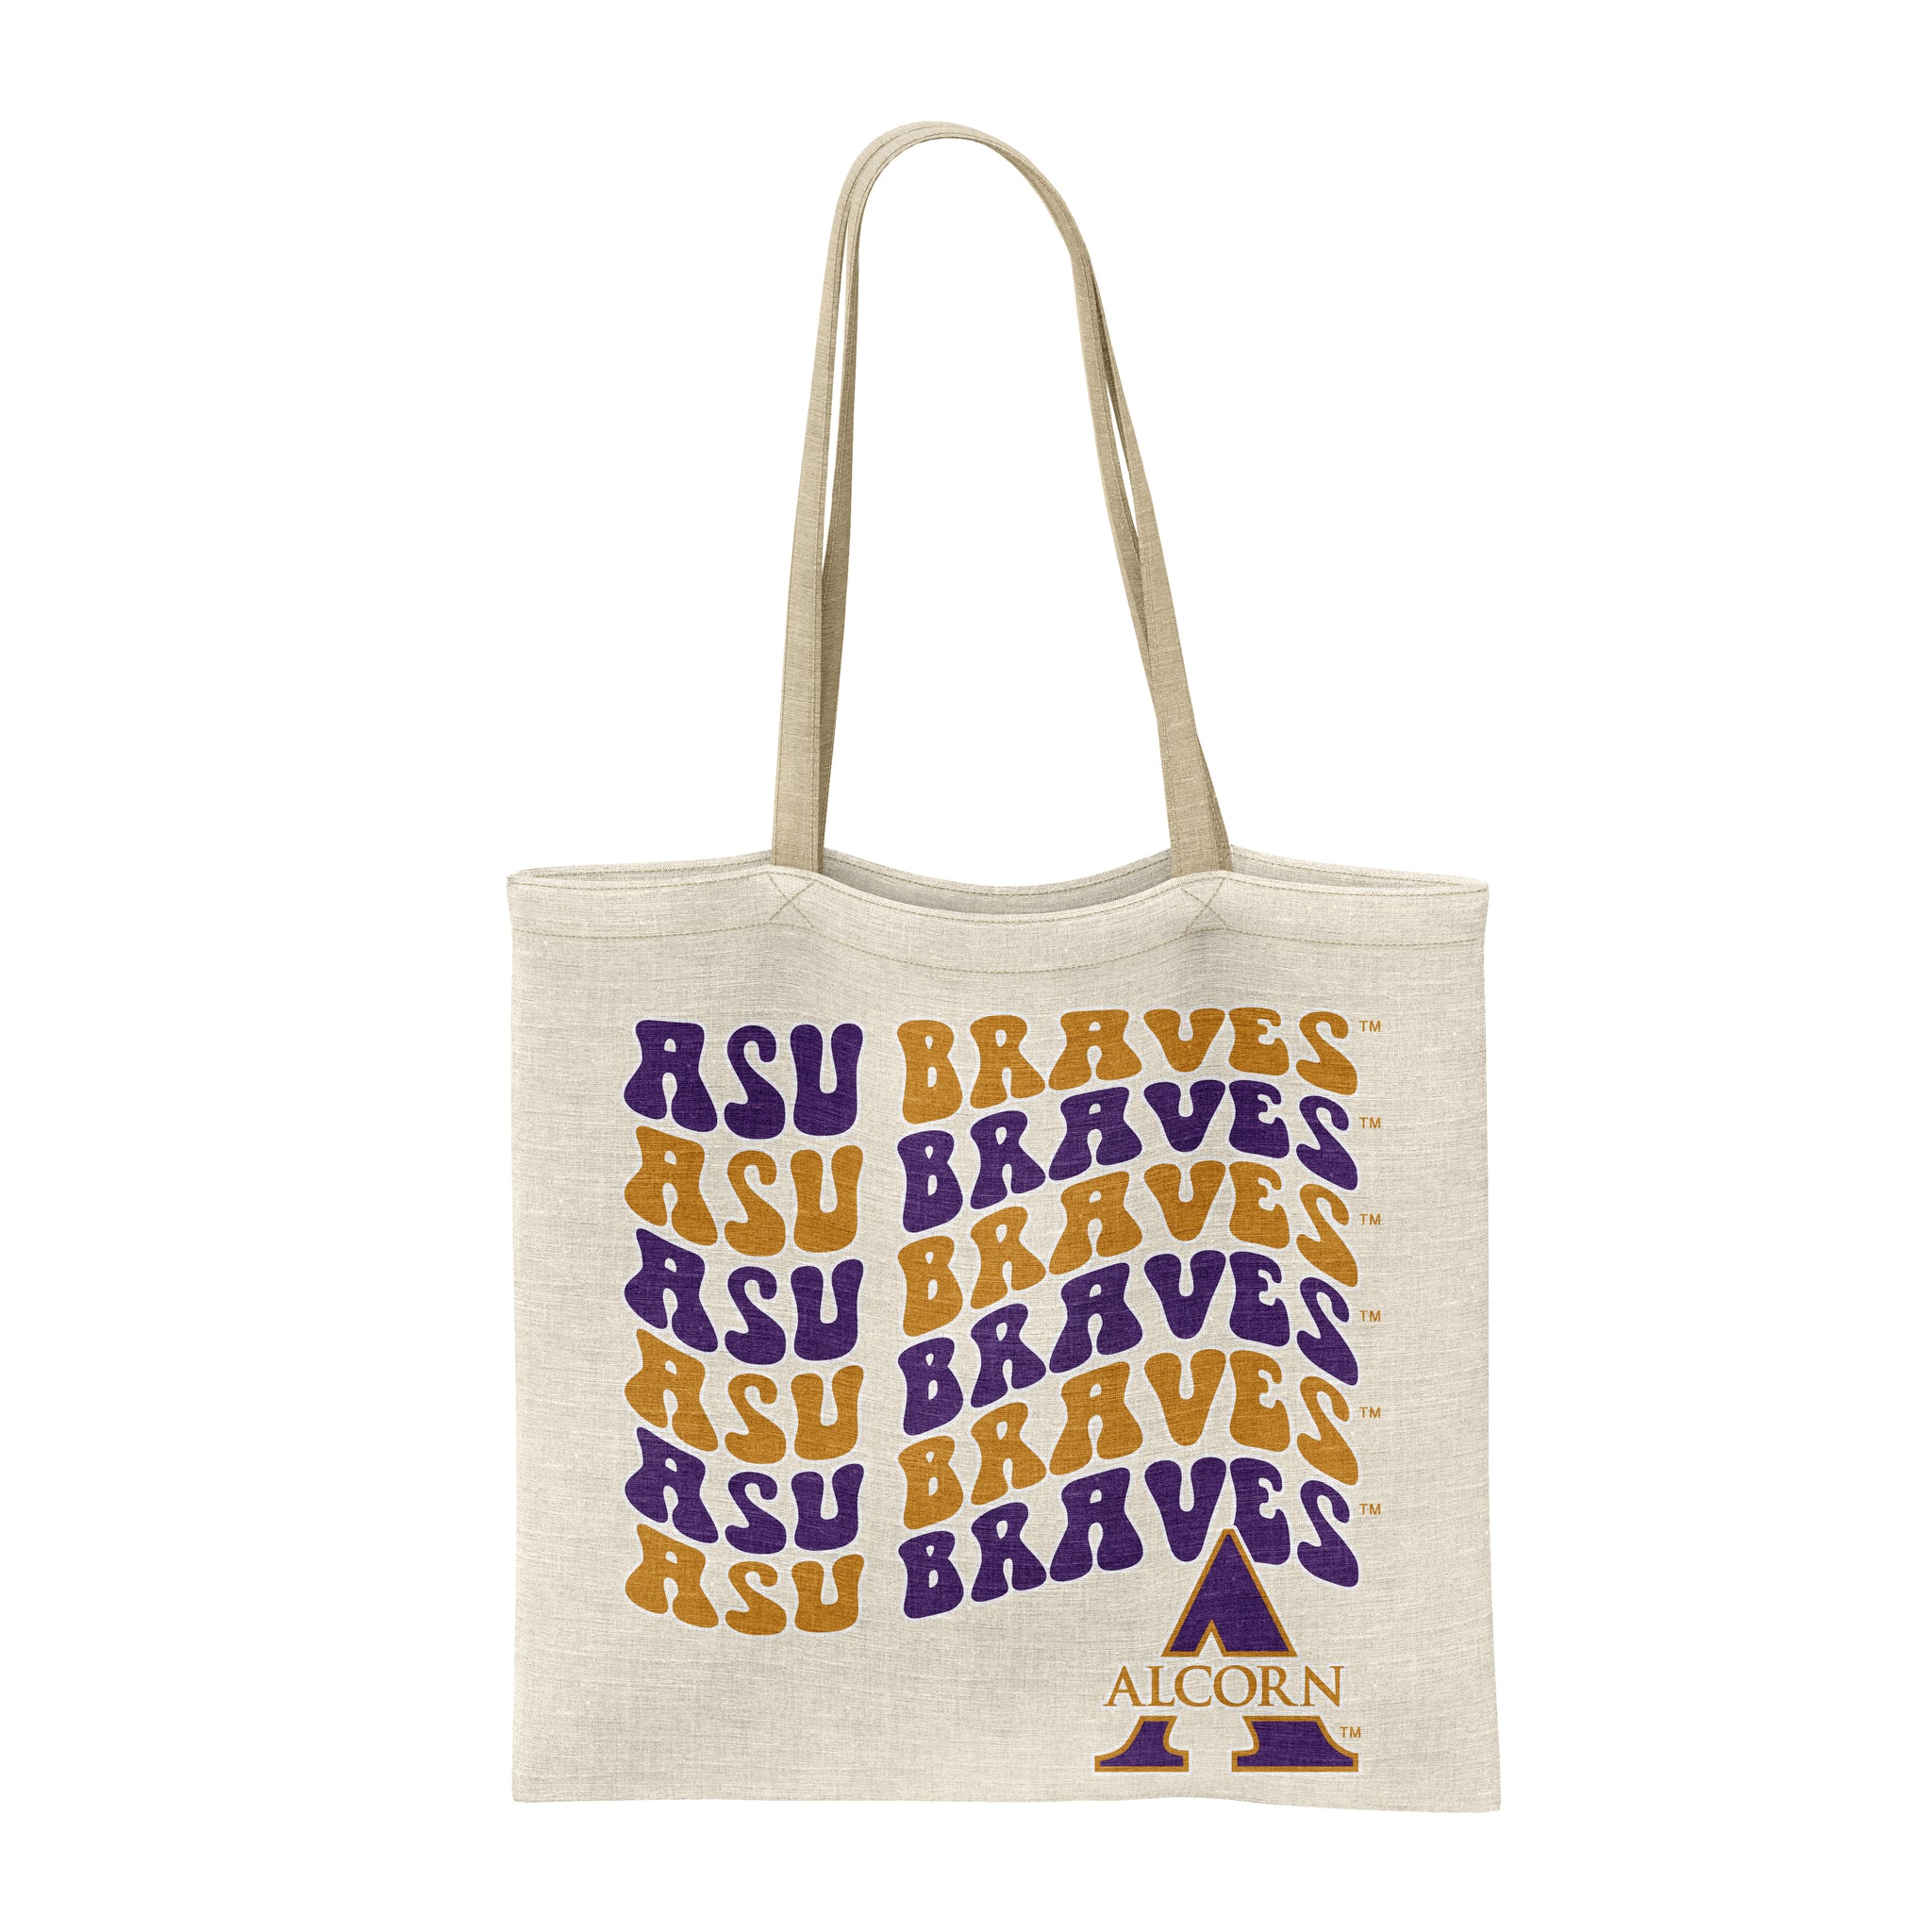 ASU Braves Tote groovy bag